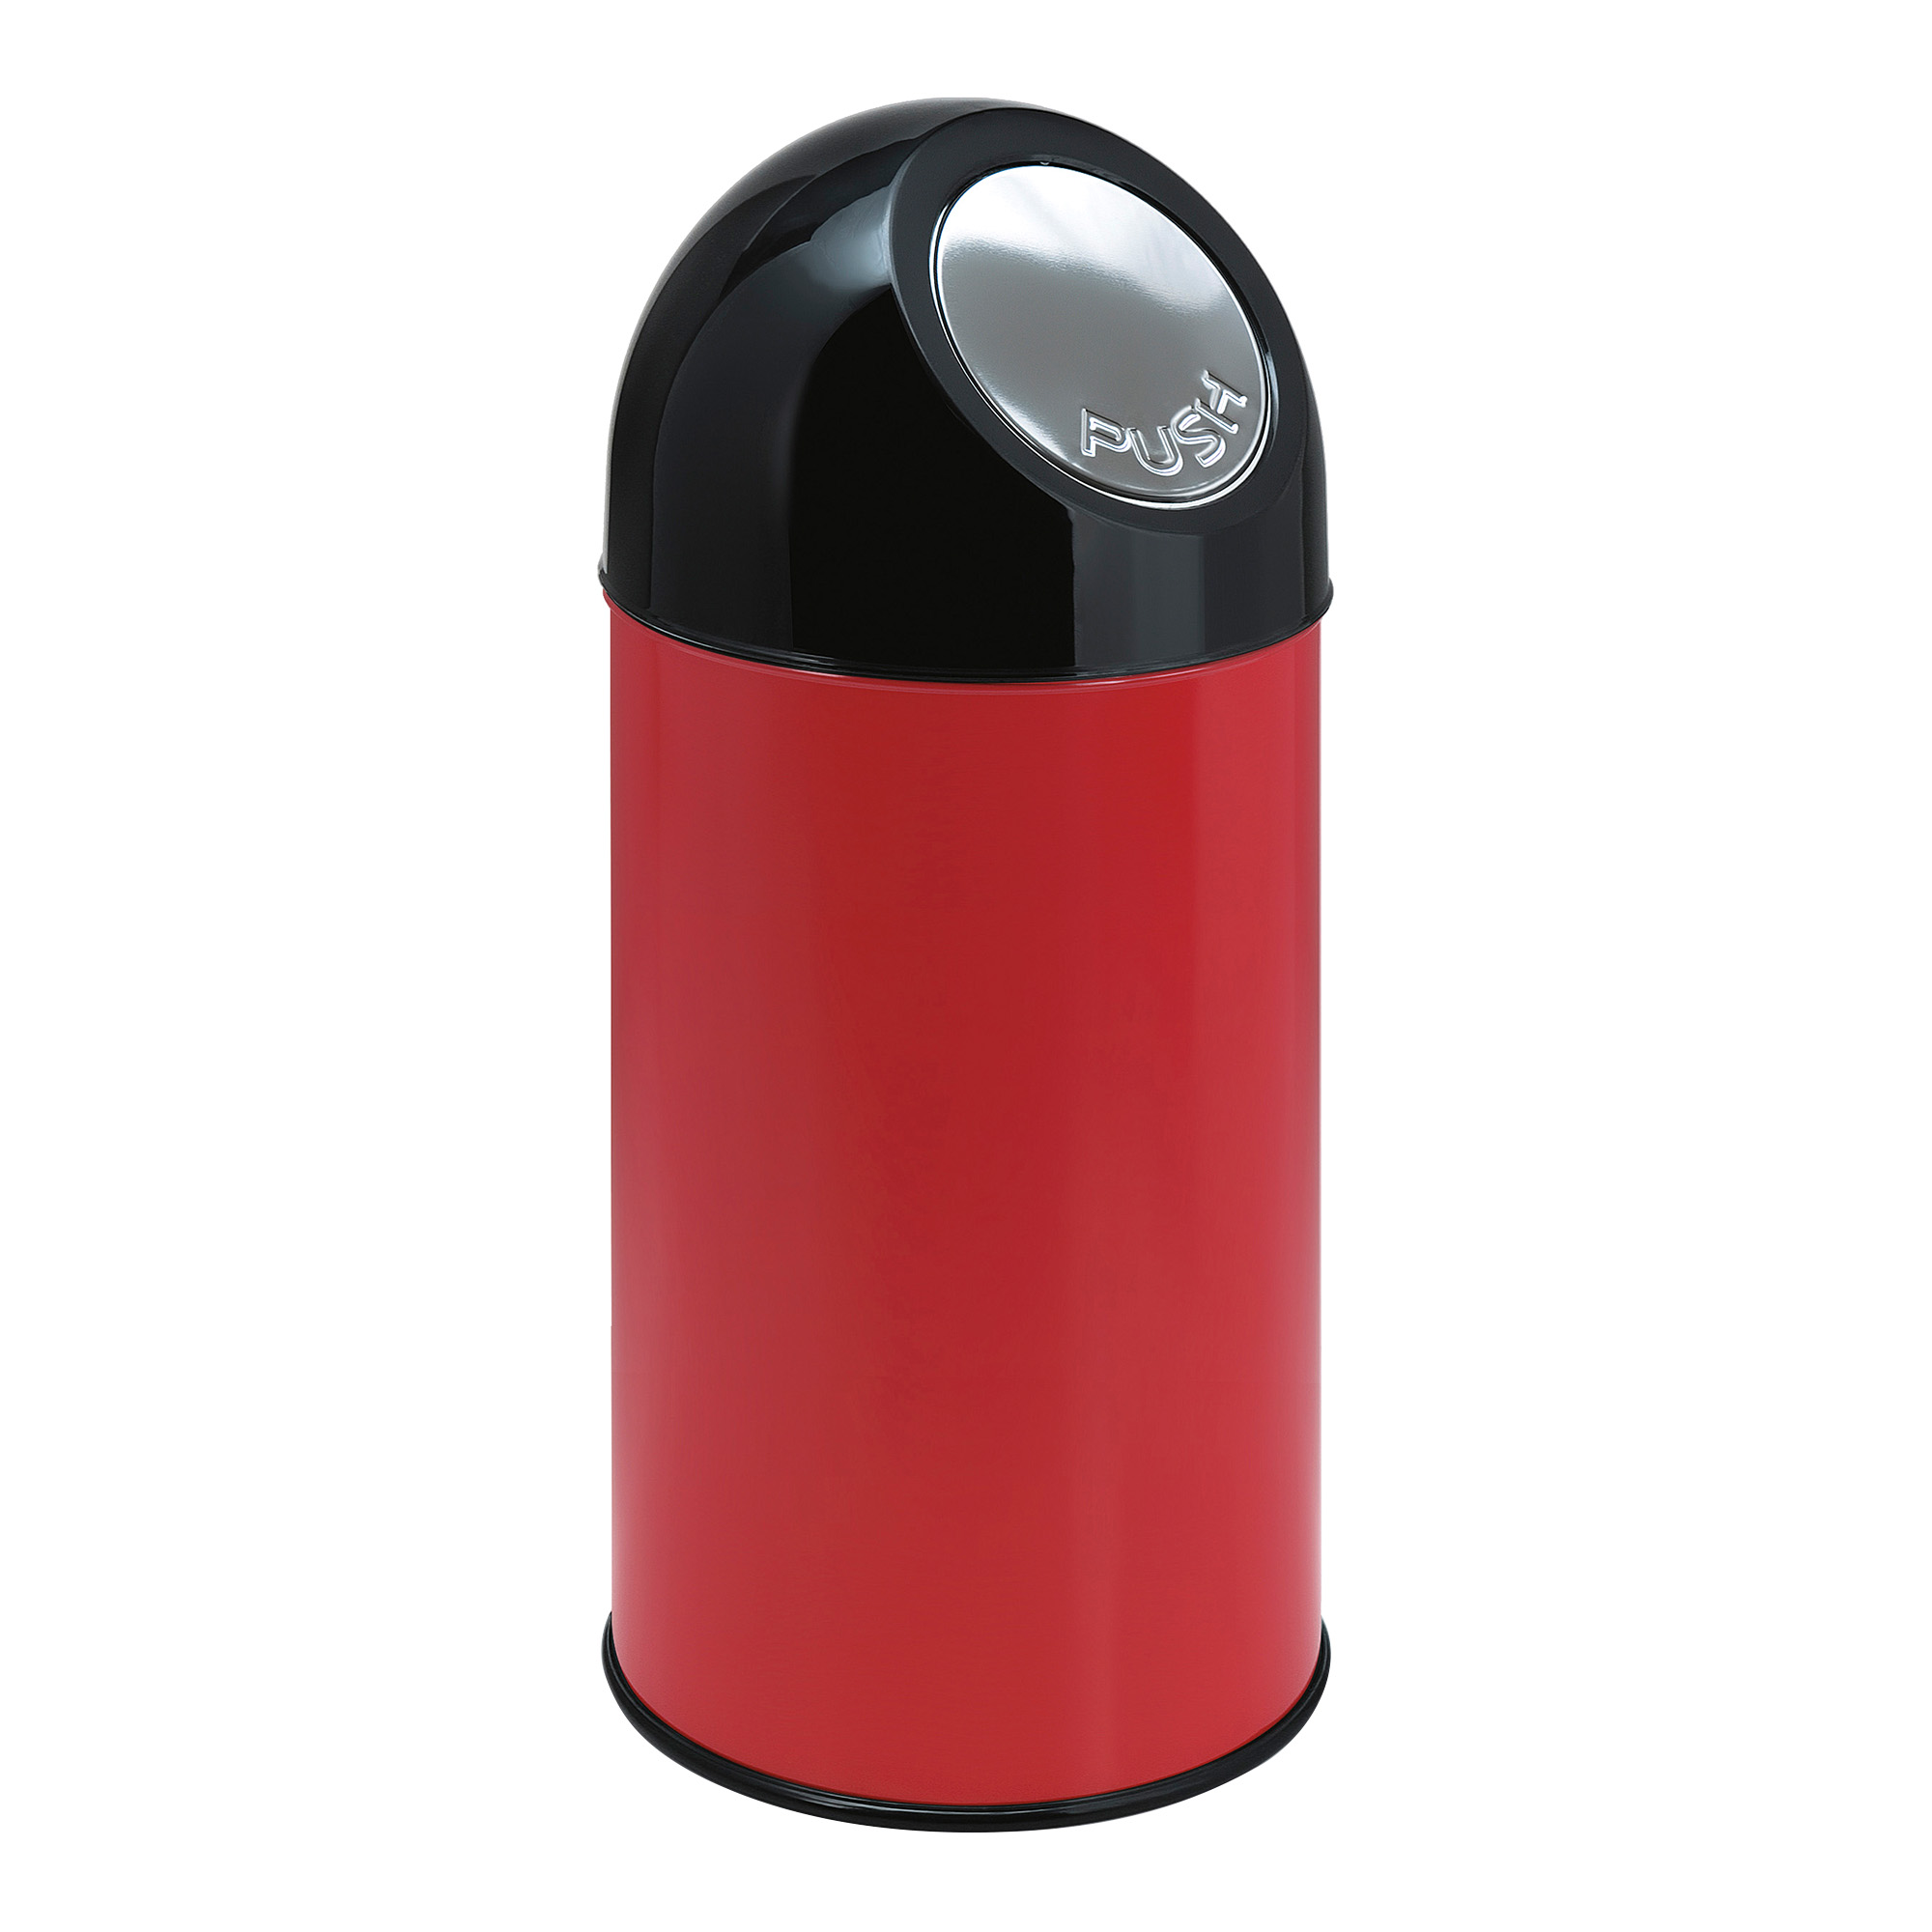 V-Part Abfallbehälter Edelstahl-Pushklappe Inneneimer 40 Liter rot/schwarz 31023509_1